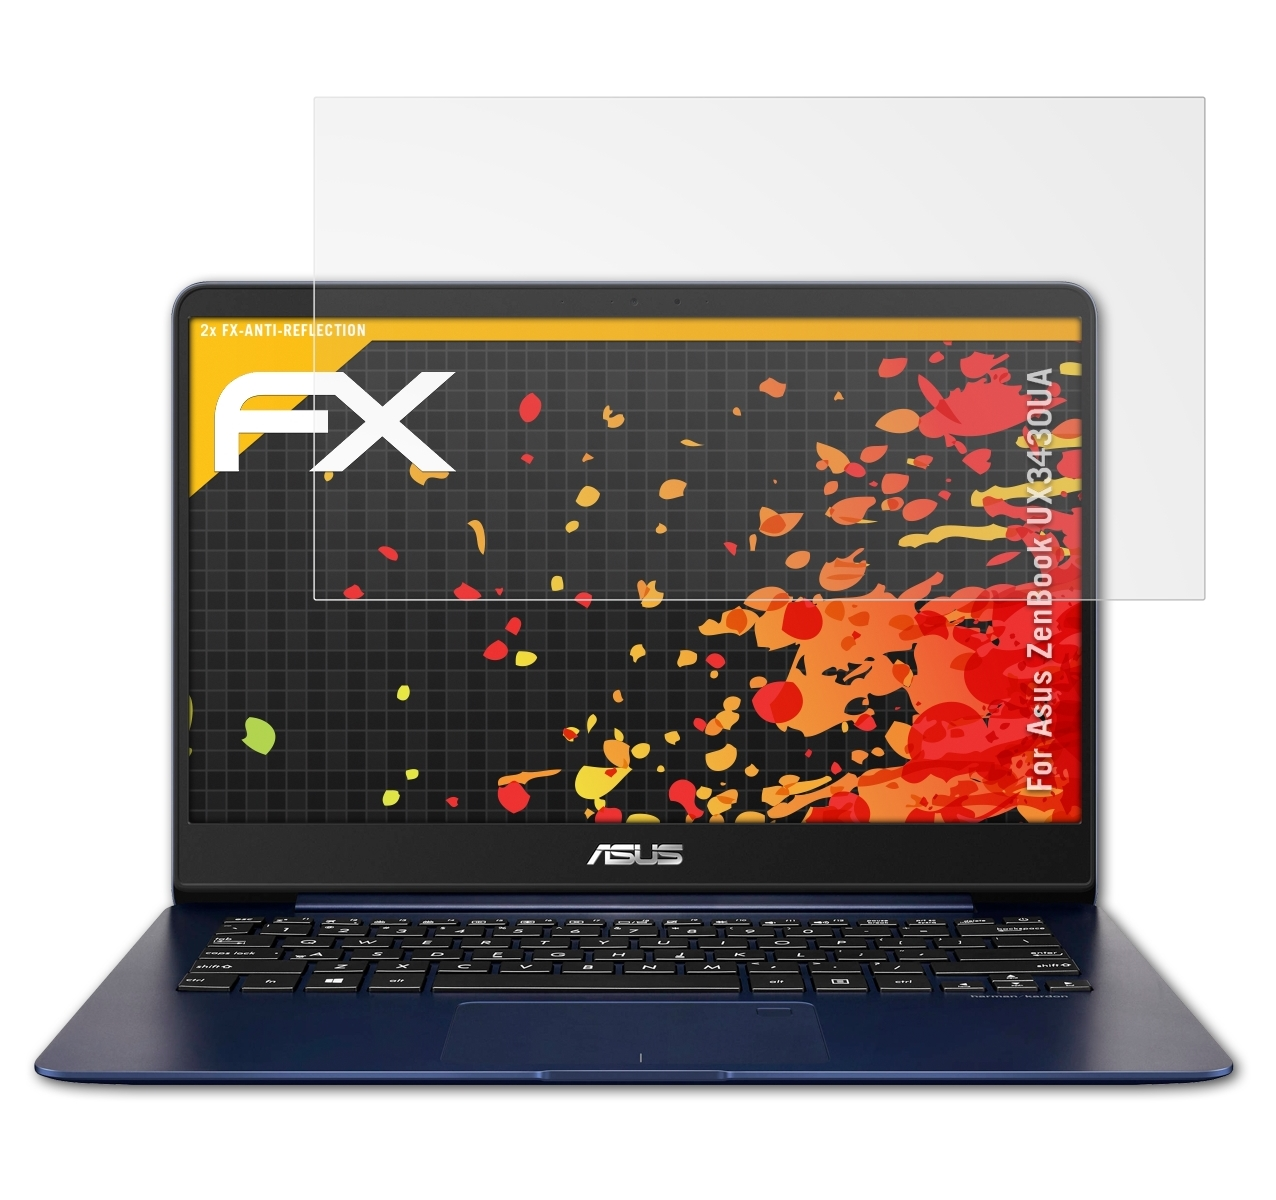 ATFOLIX 2x FX-Antireflex Asus ZenBook Displayschutz(für (UX3430UA))